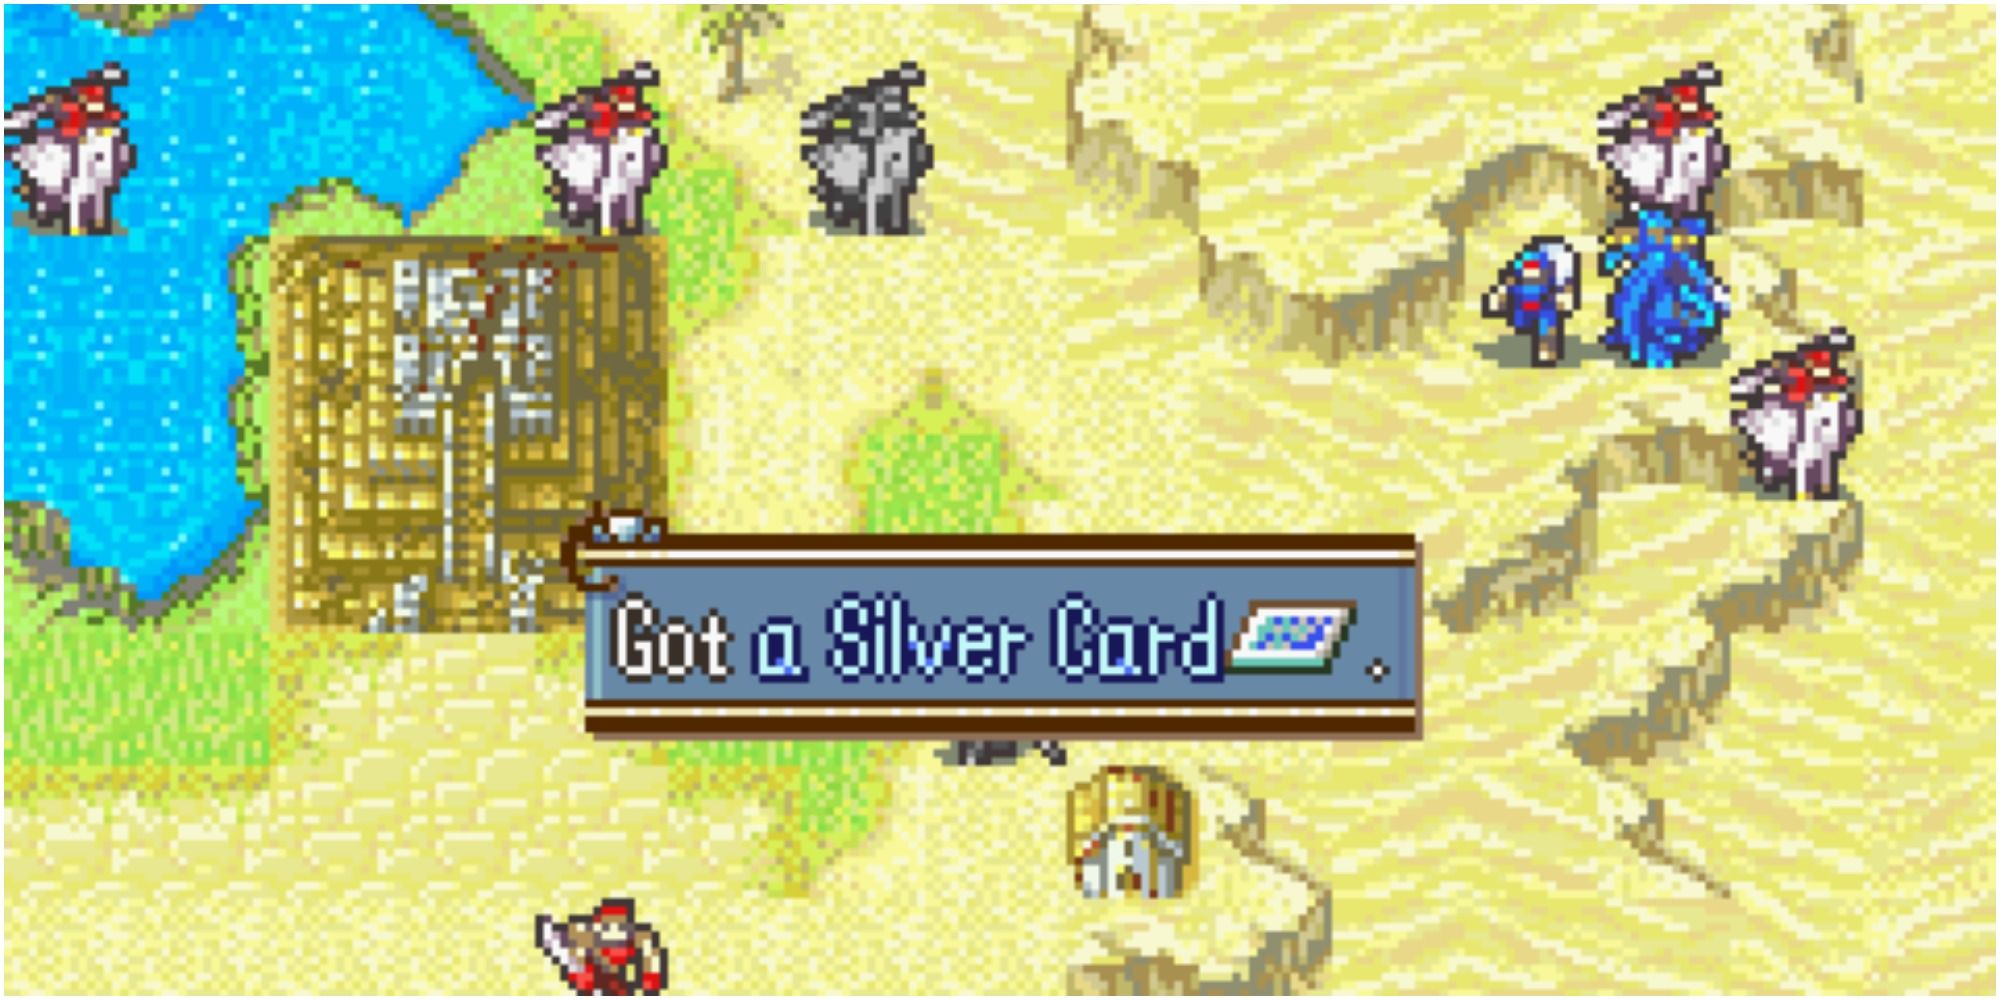 silver card fire emblem screenshot with desert terrain